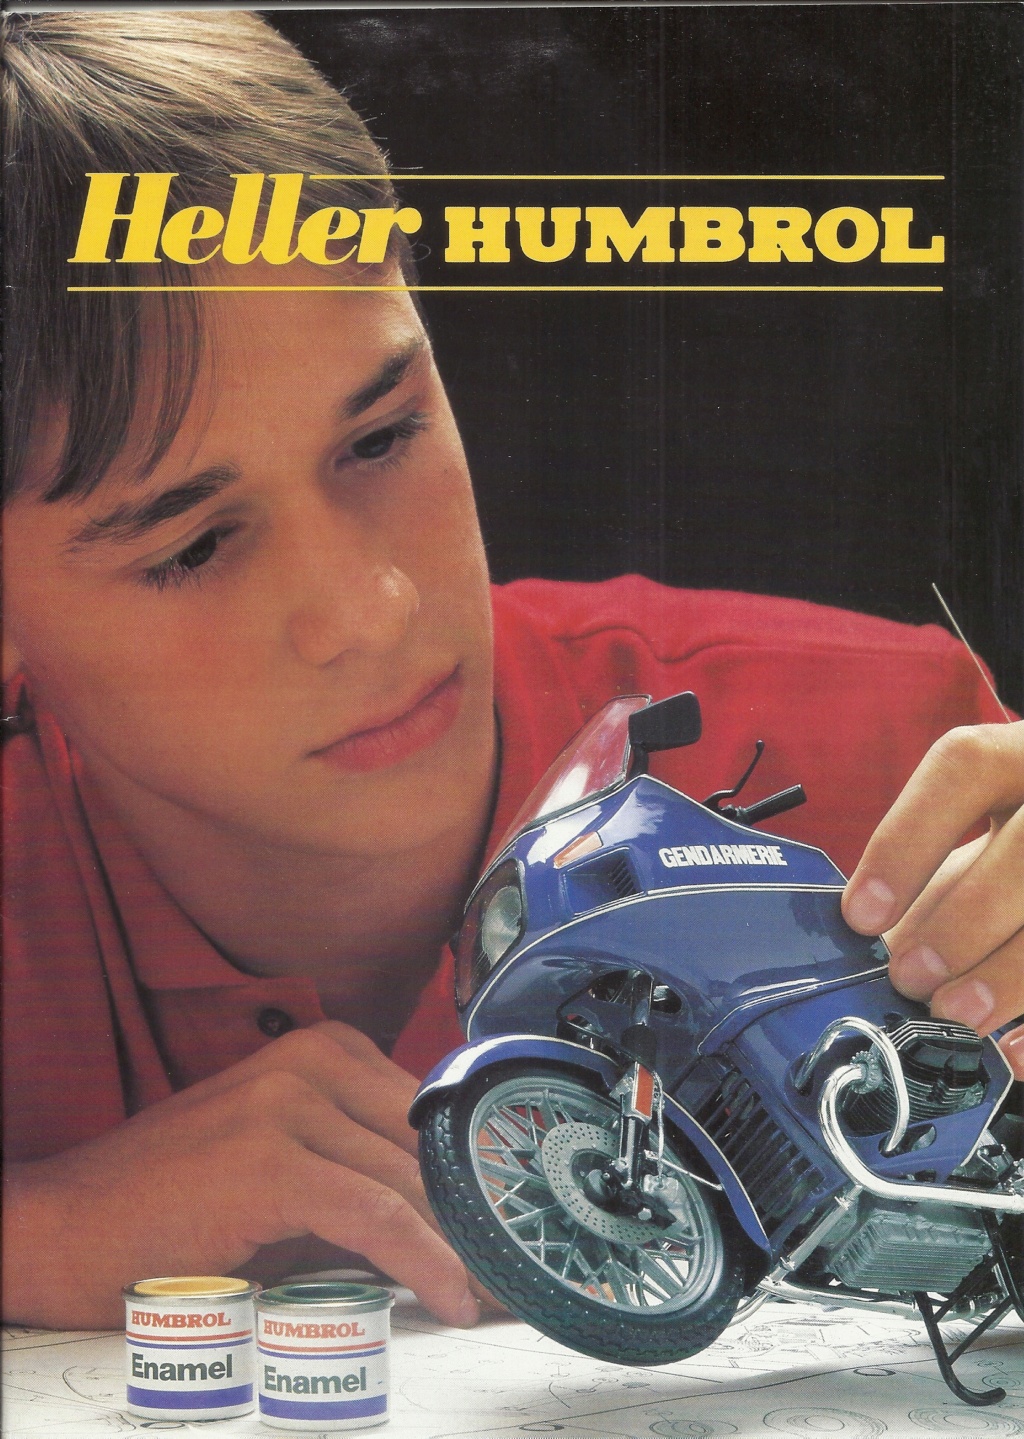 [1985] Pochette détaillant HELLER HUMBROL avec catalogues et tarif revendeur 1985  Hell3955